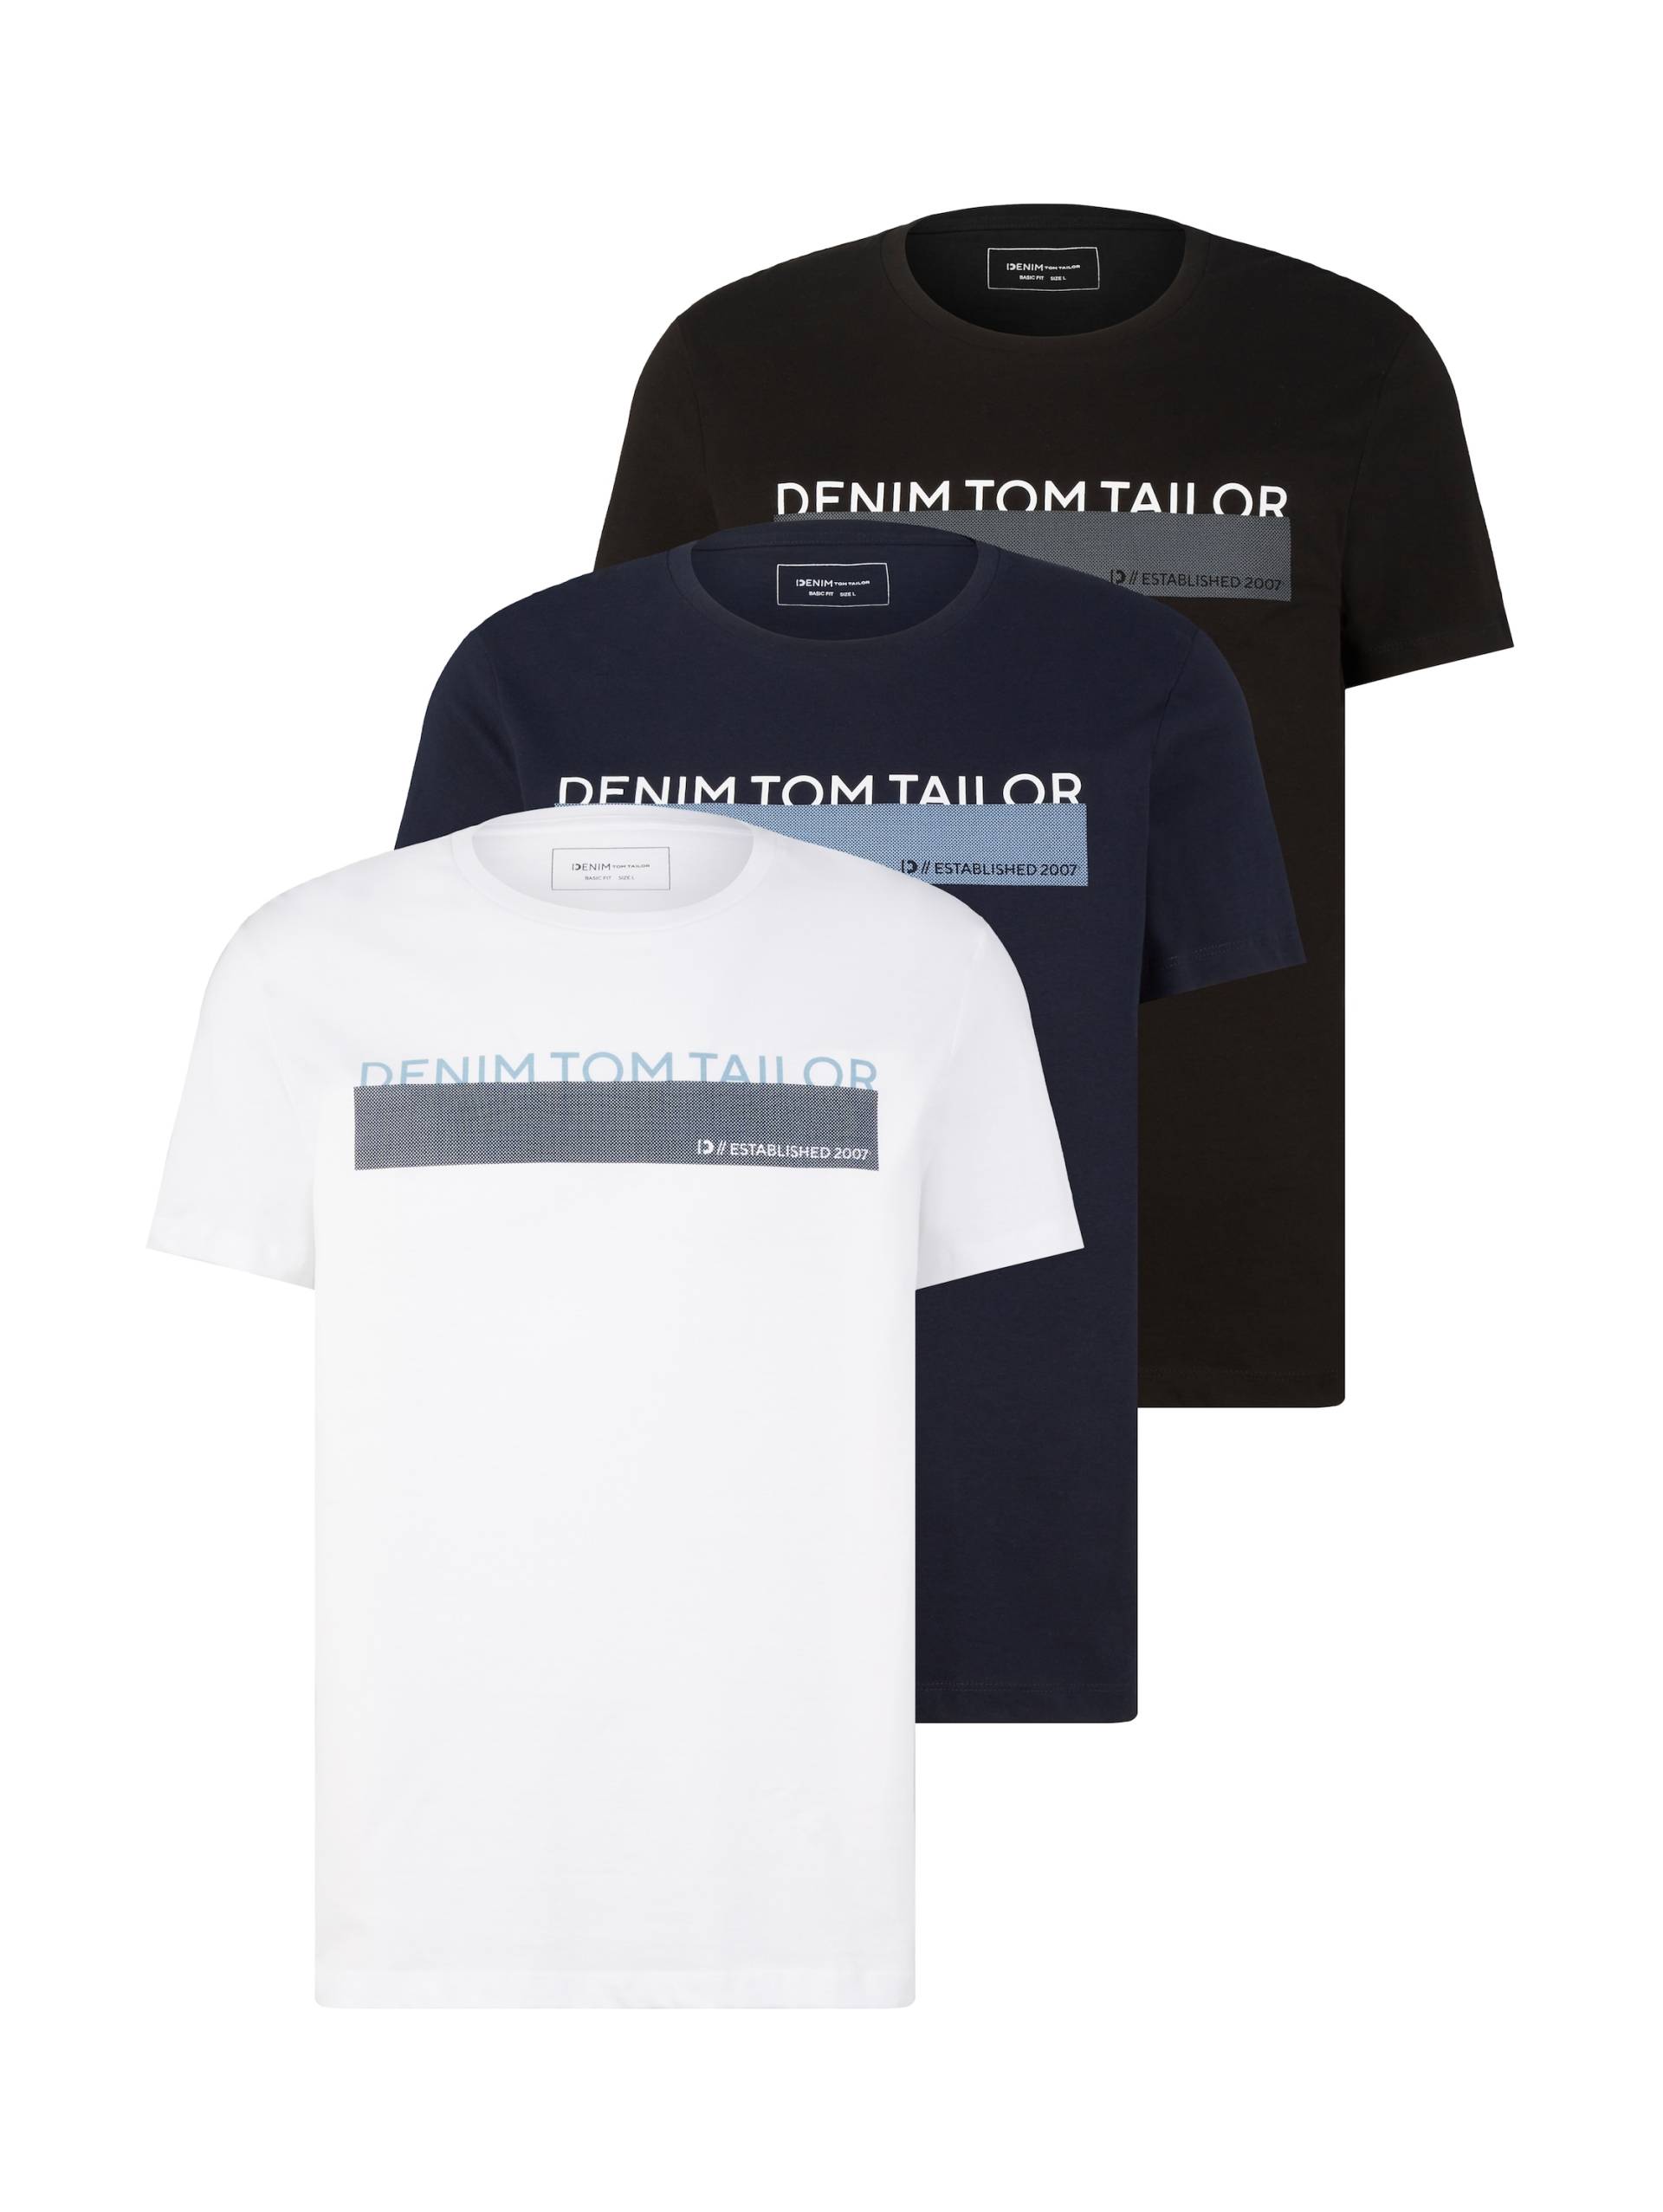 TOM TAILOR Denim T-Shirt, in verschiedenen Farben von TOM TAILOR Denim